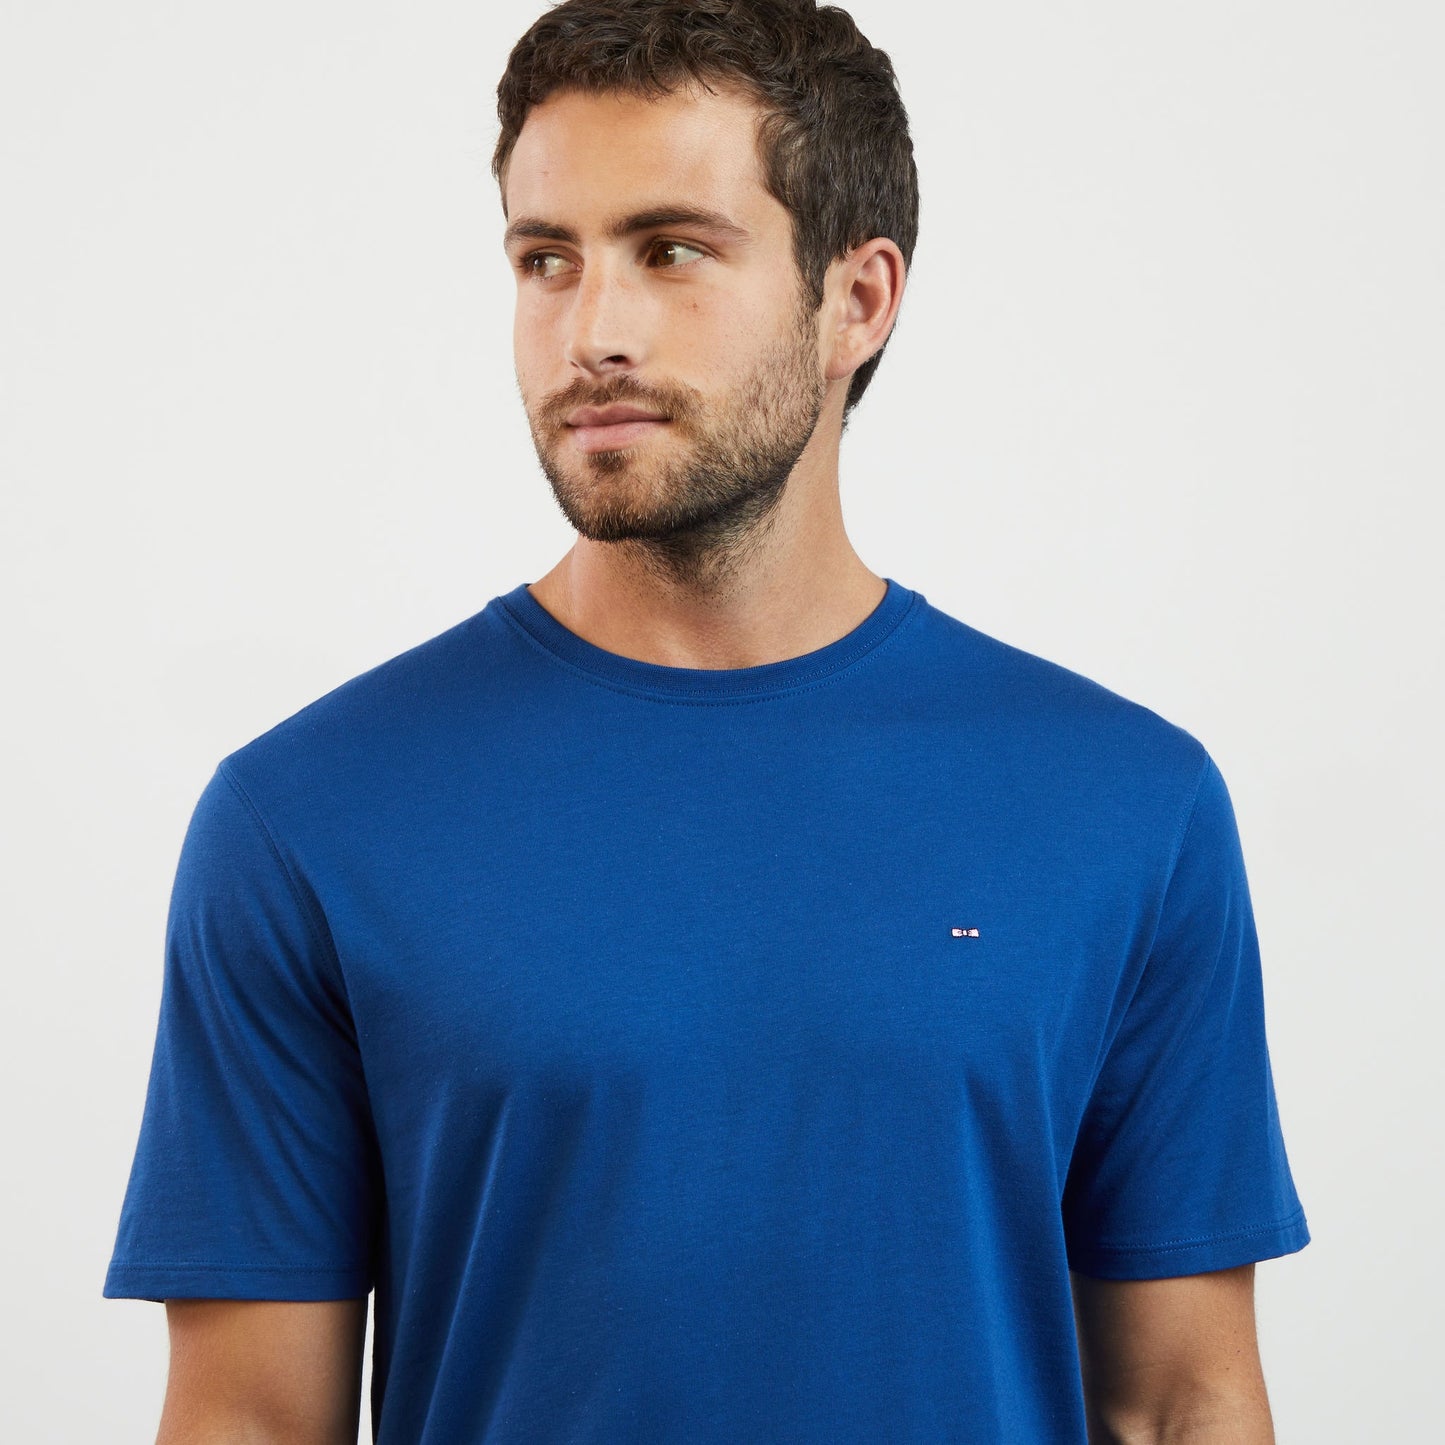 T-shirt bleu manches courtes en coton Pima